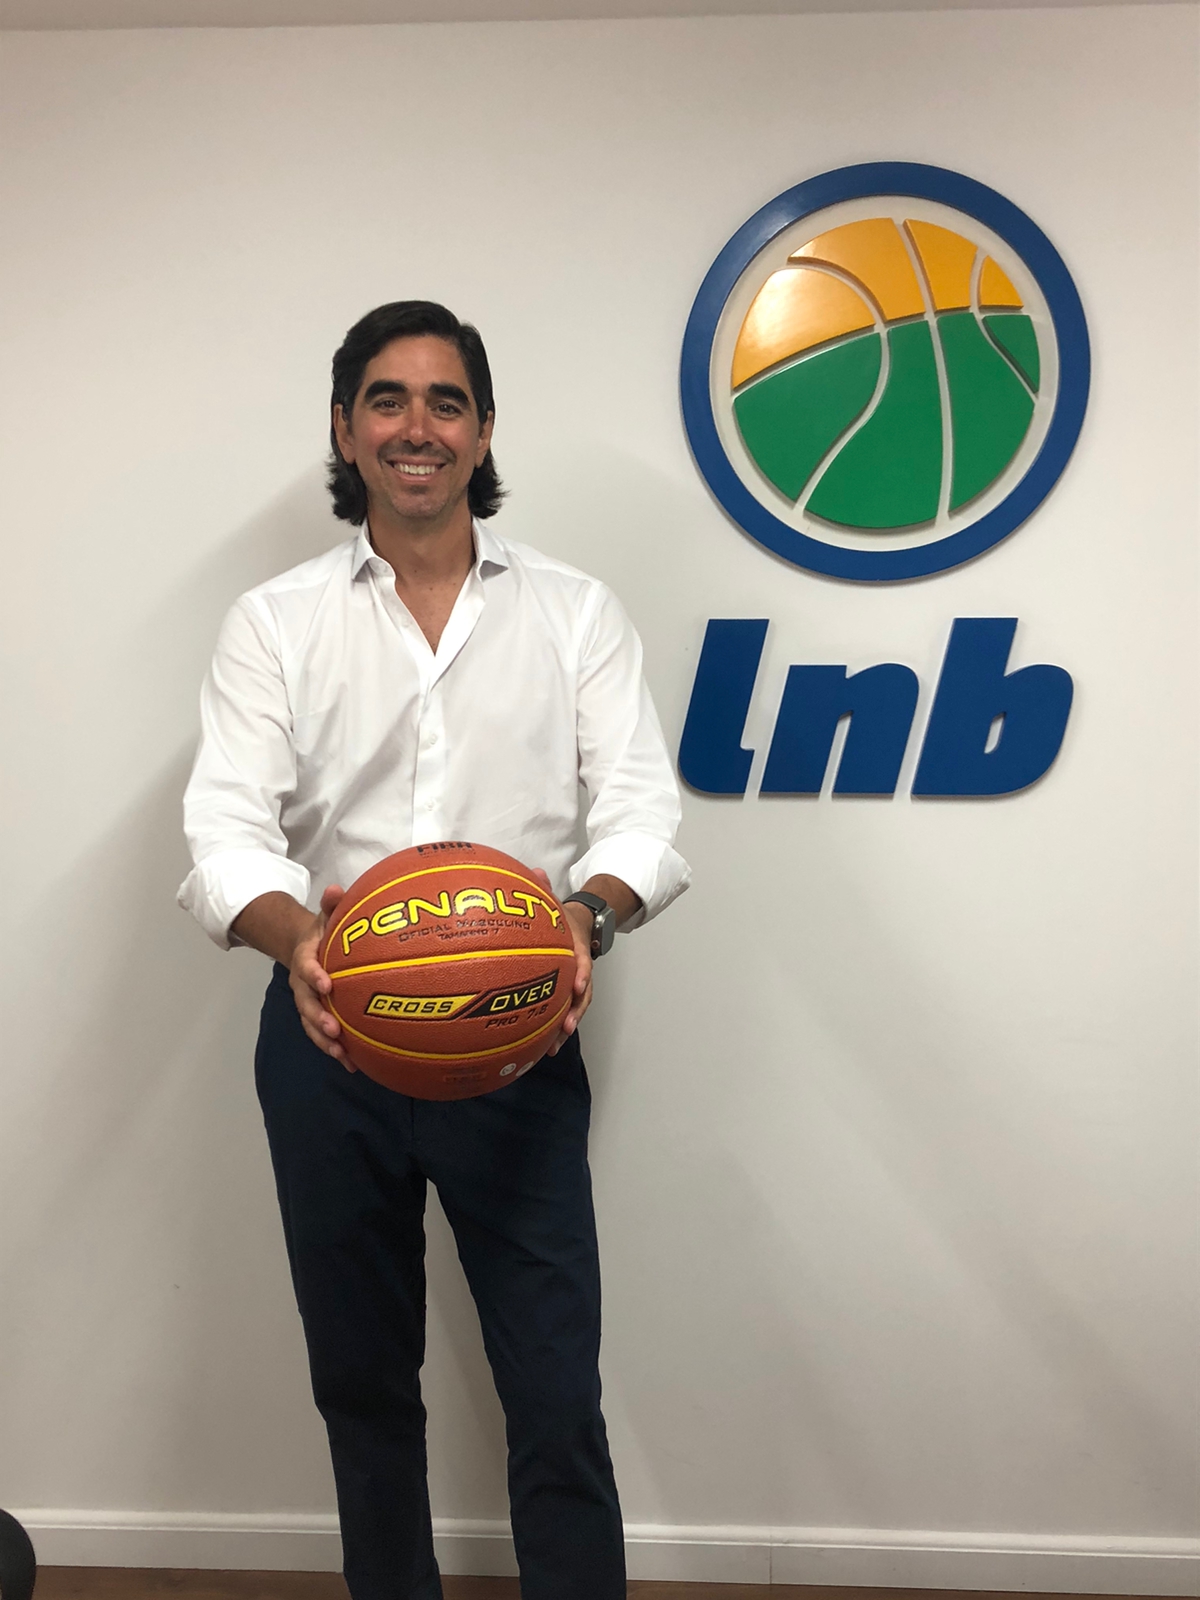 Federação Paulista de Basketball completa 99 anos – Liga Nacional de  Basquete